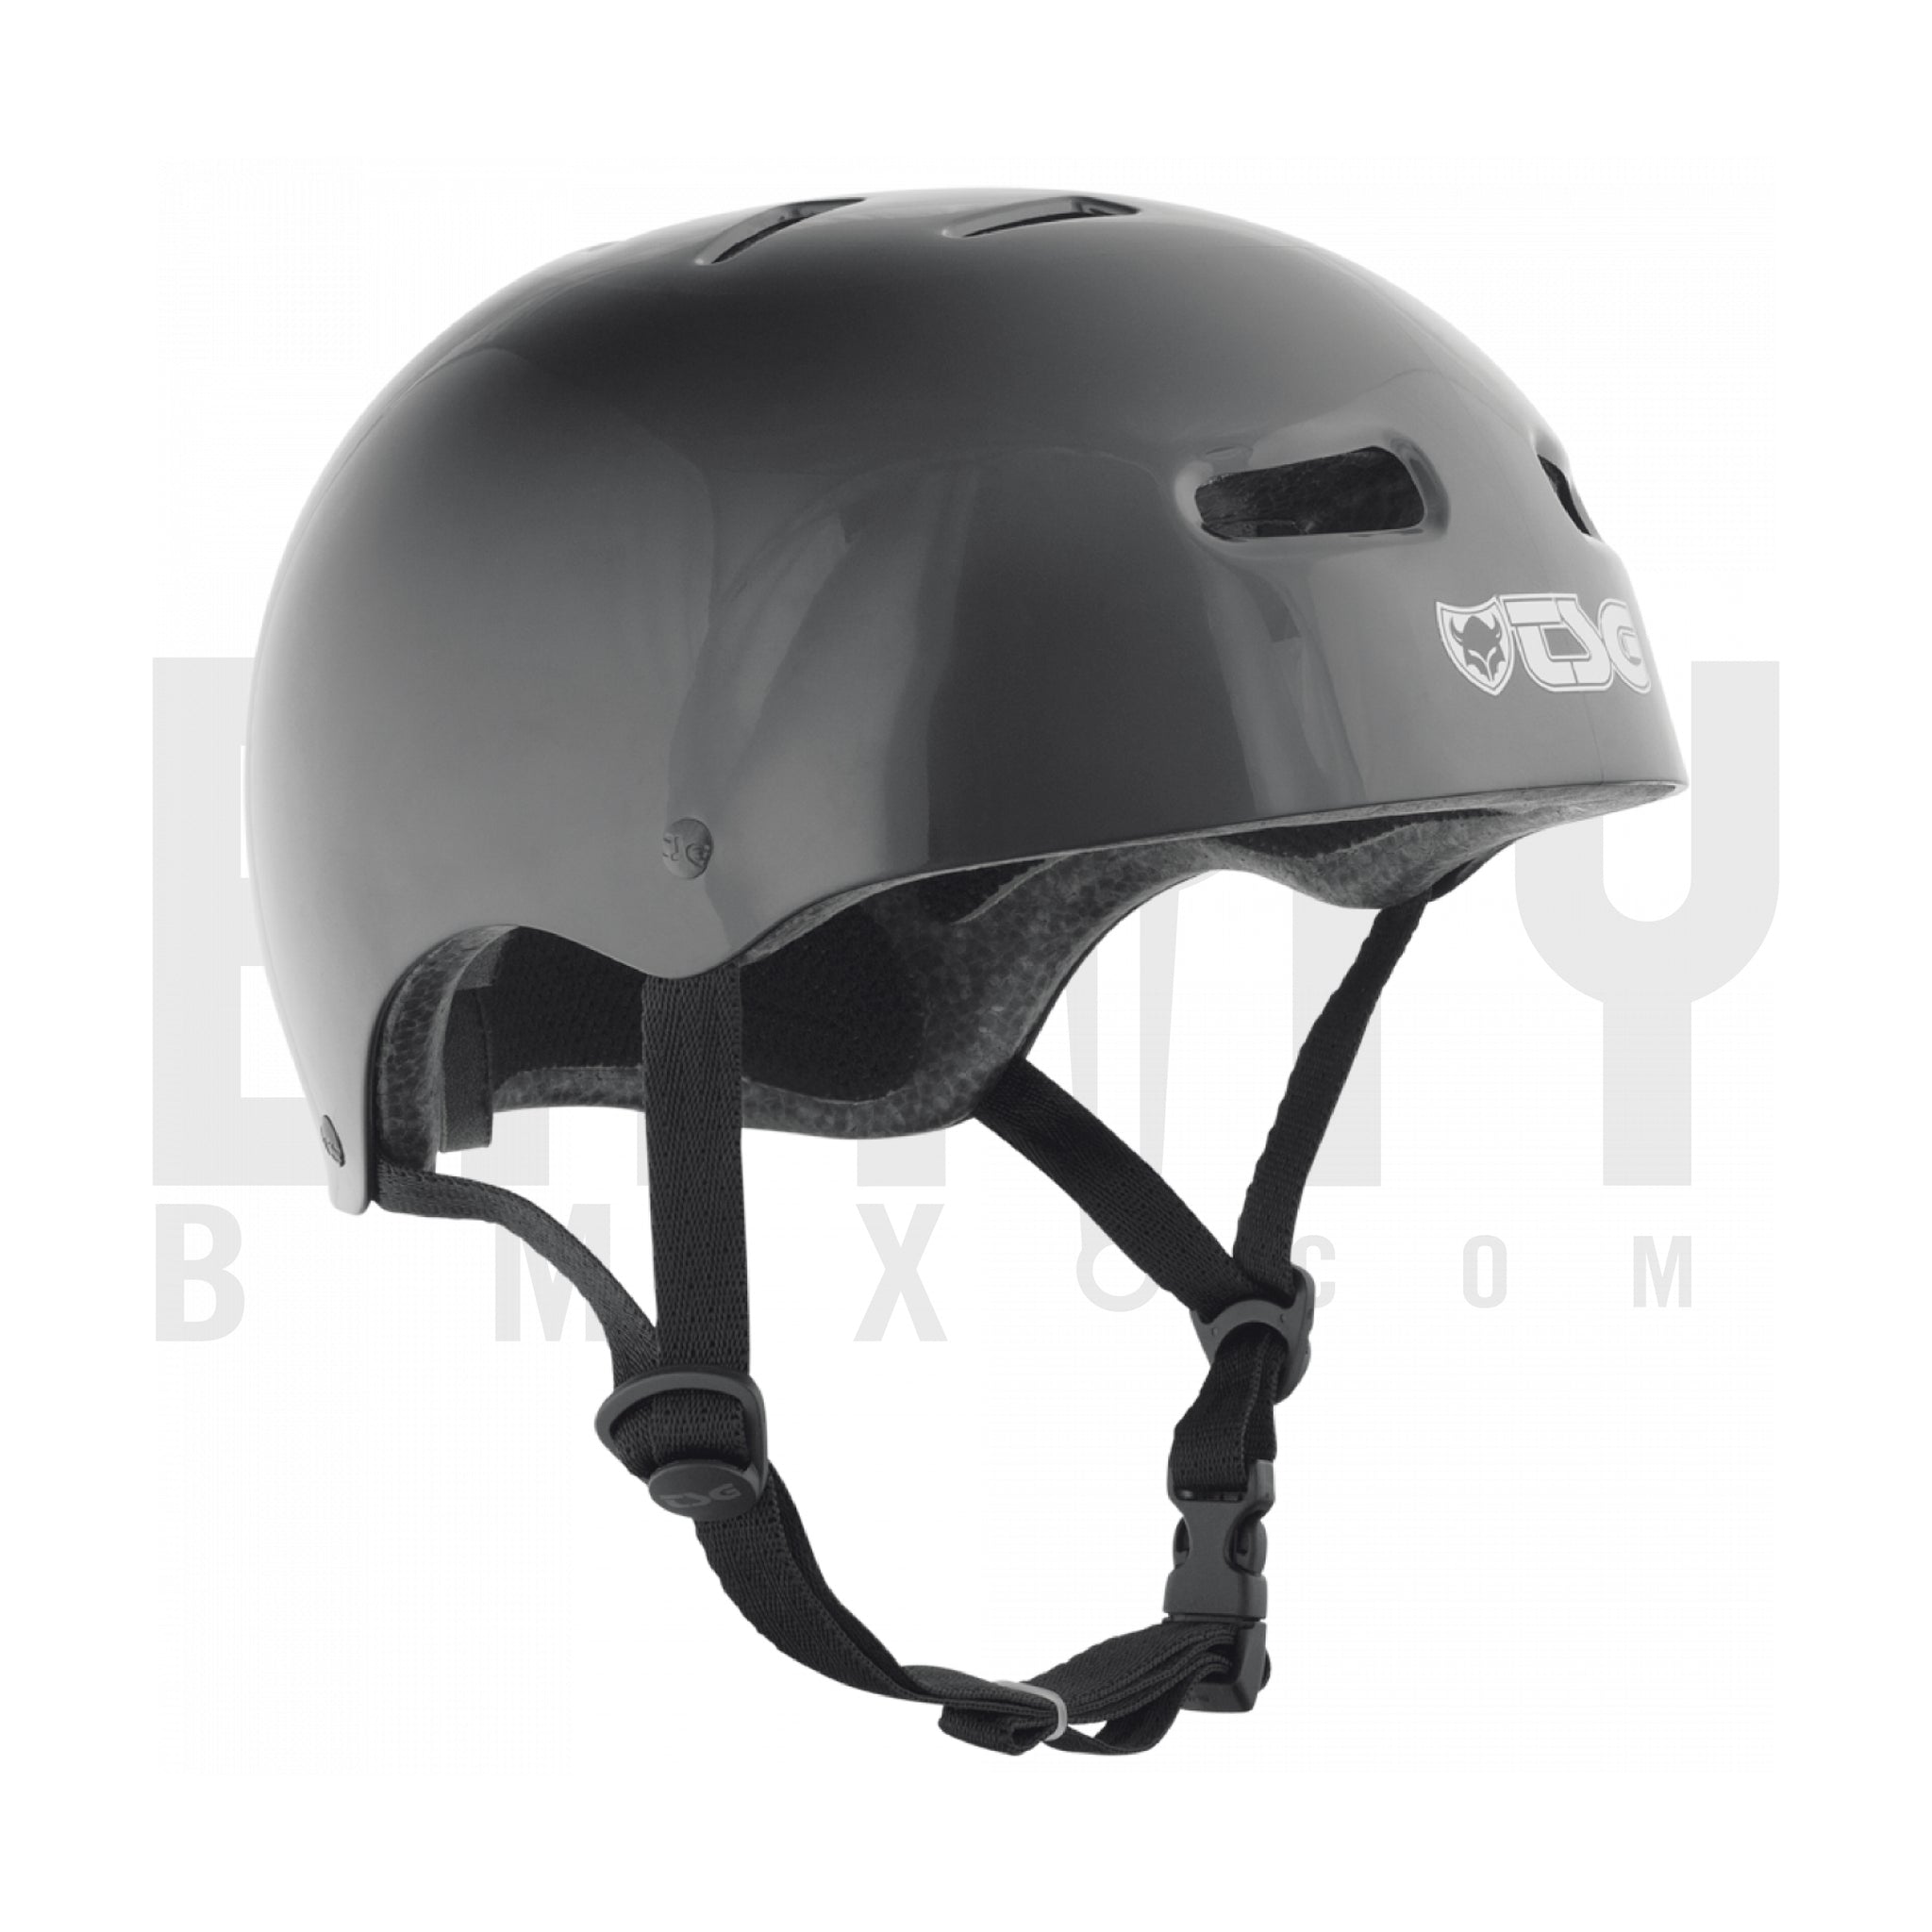 TSG skate/bmx injected Helmet / Black